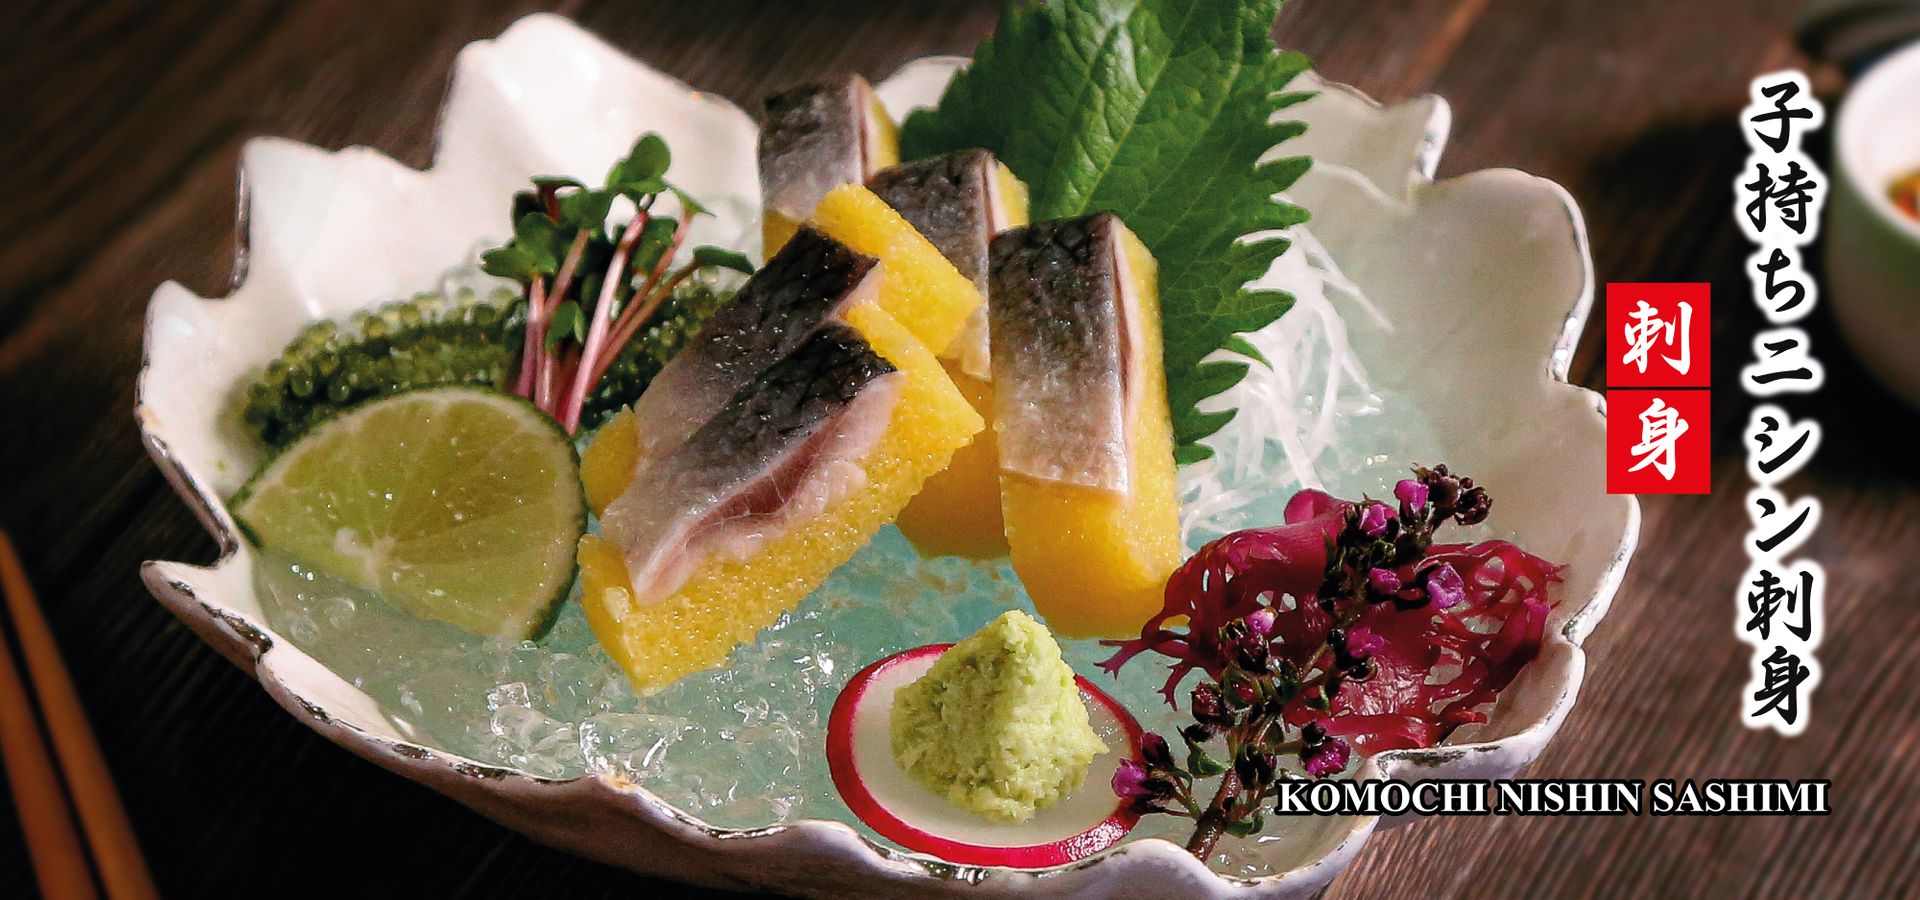 sashimi của Hokkaido Sushi Sachi menu